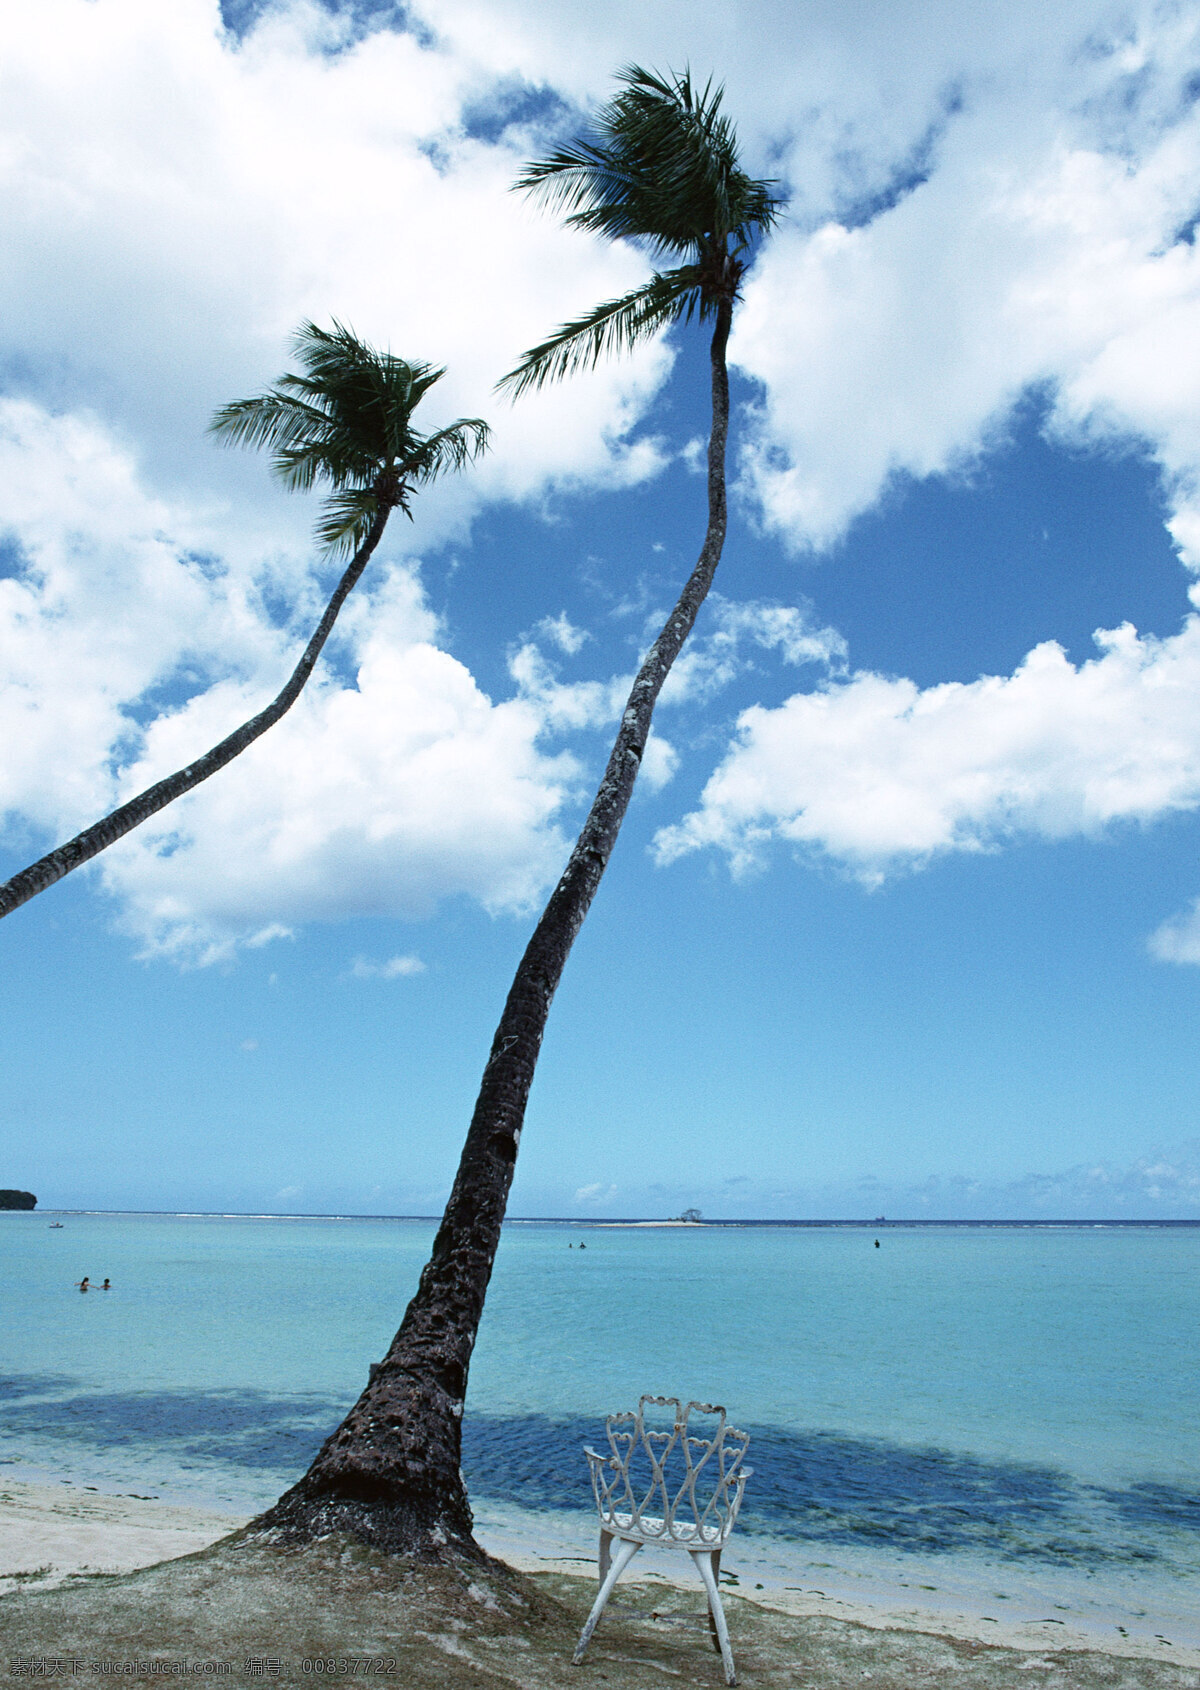 夏威夷 风光摄影 夏威夷风光 海洋 海滩 沙滩 避暑胜地 海边 树木 座椅 夏天 夏日风情 清爽一夏 度假旅游 蔚蓝天空 沙滩椅 国外旅游 旅游摄影 海洋海边 自然景观 白色